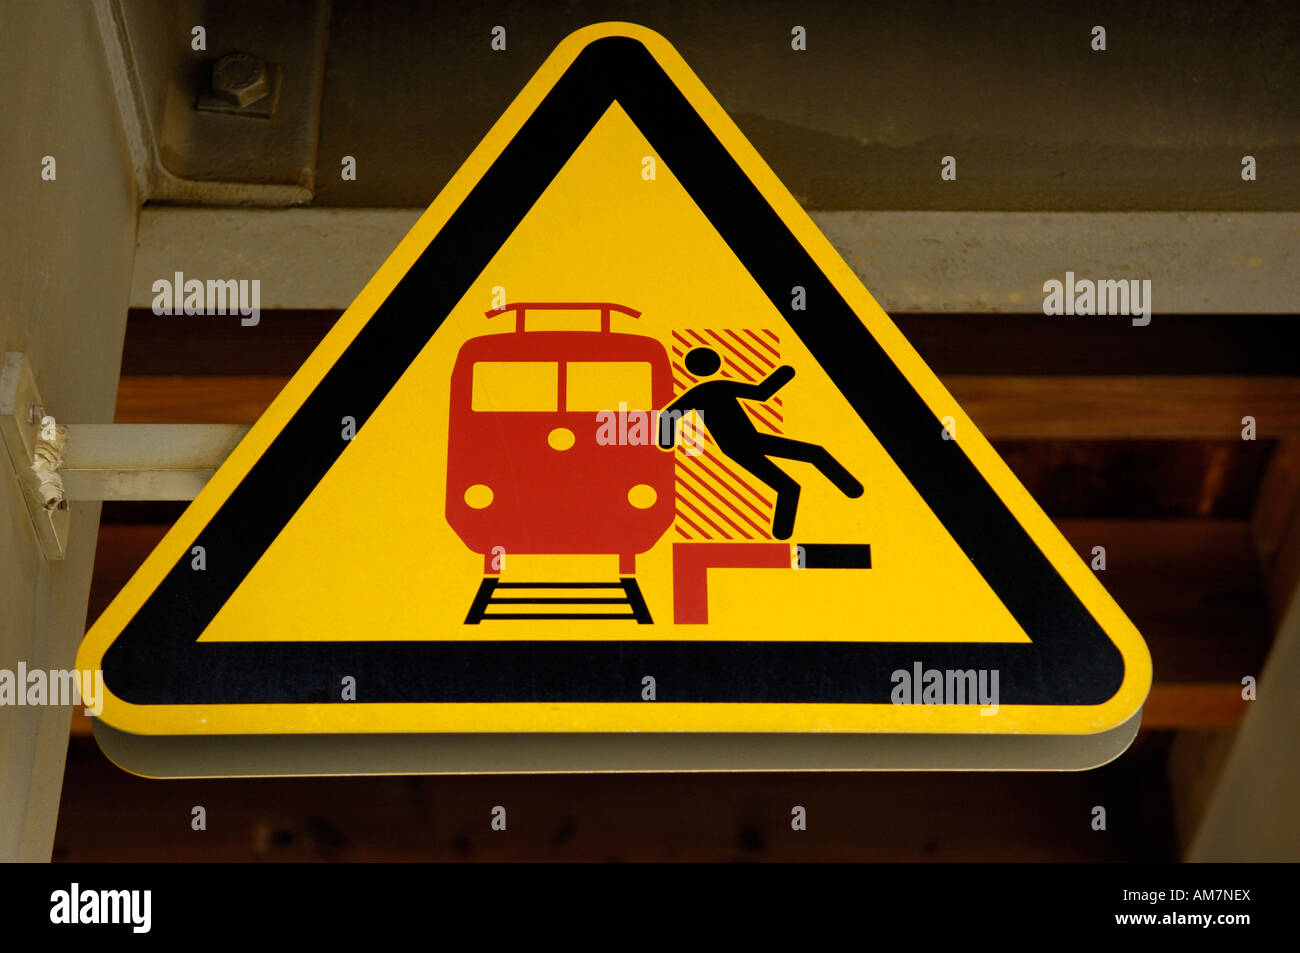 Danger sign, Deutsche Bahn, Germany Stock Photo